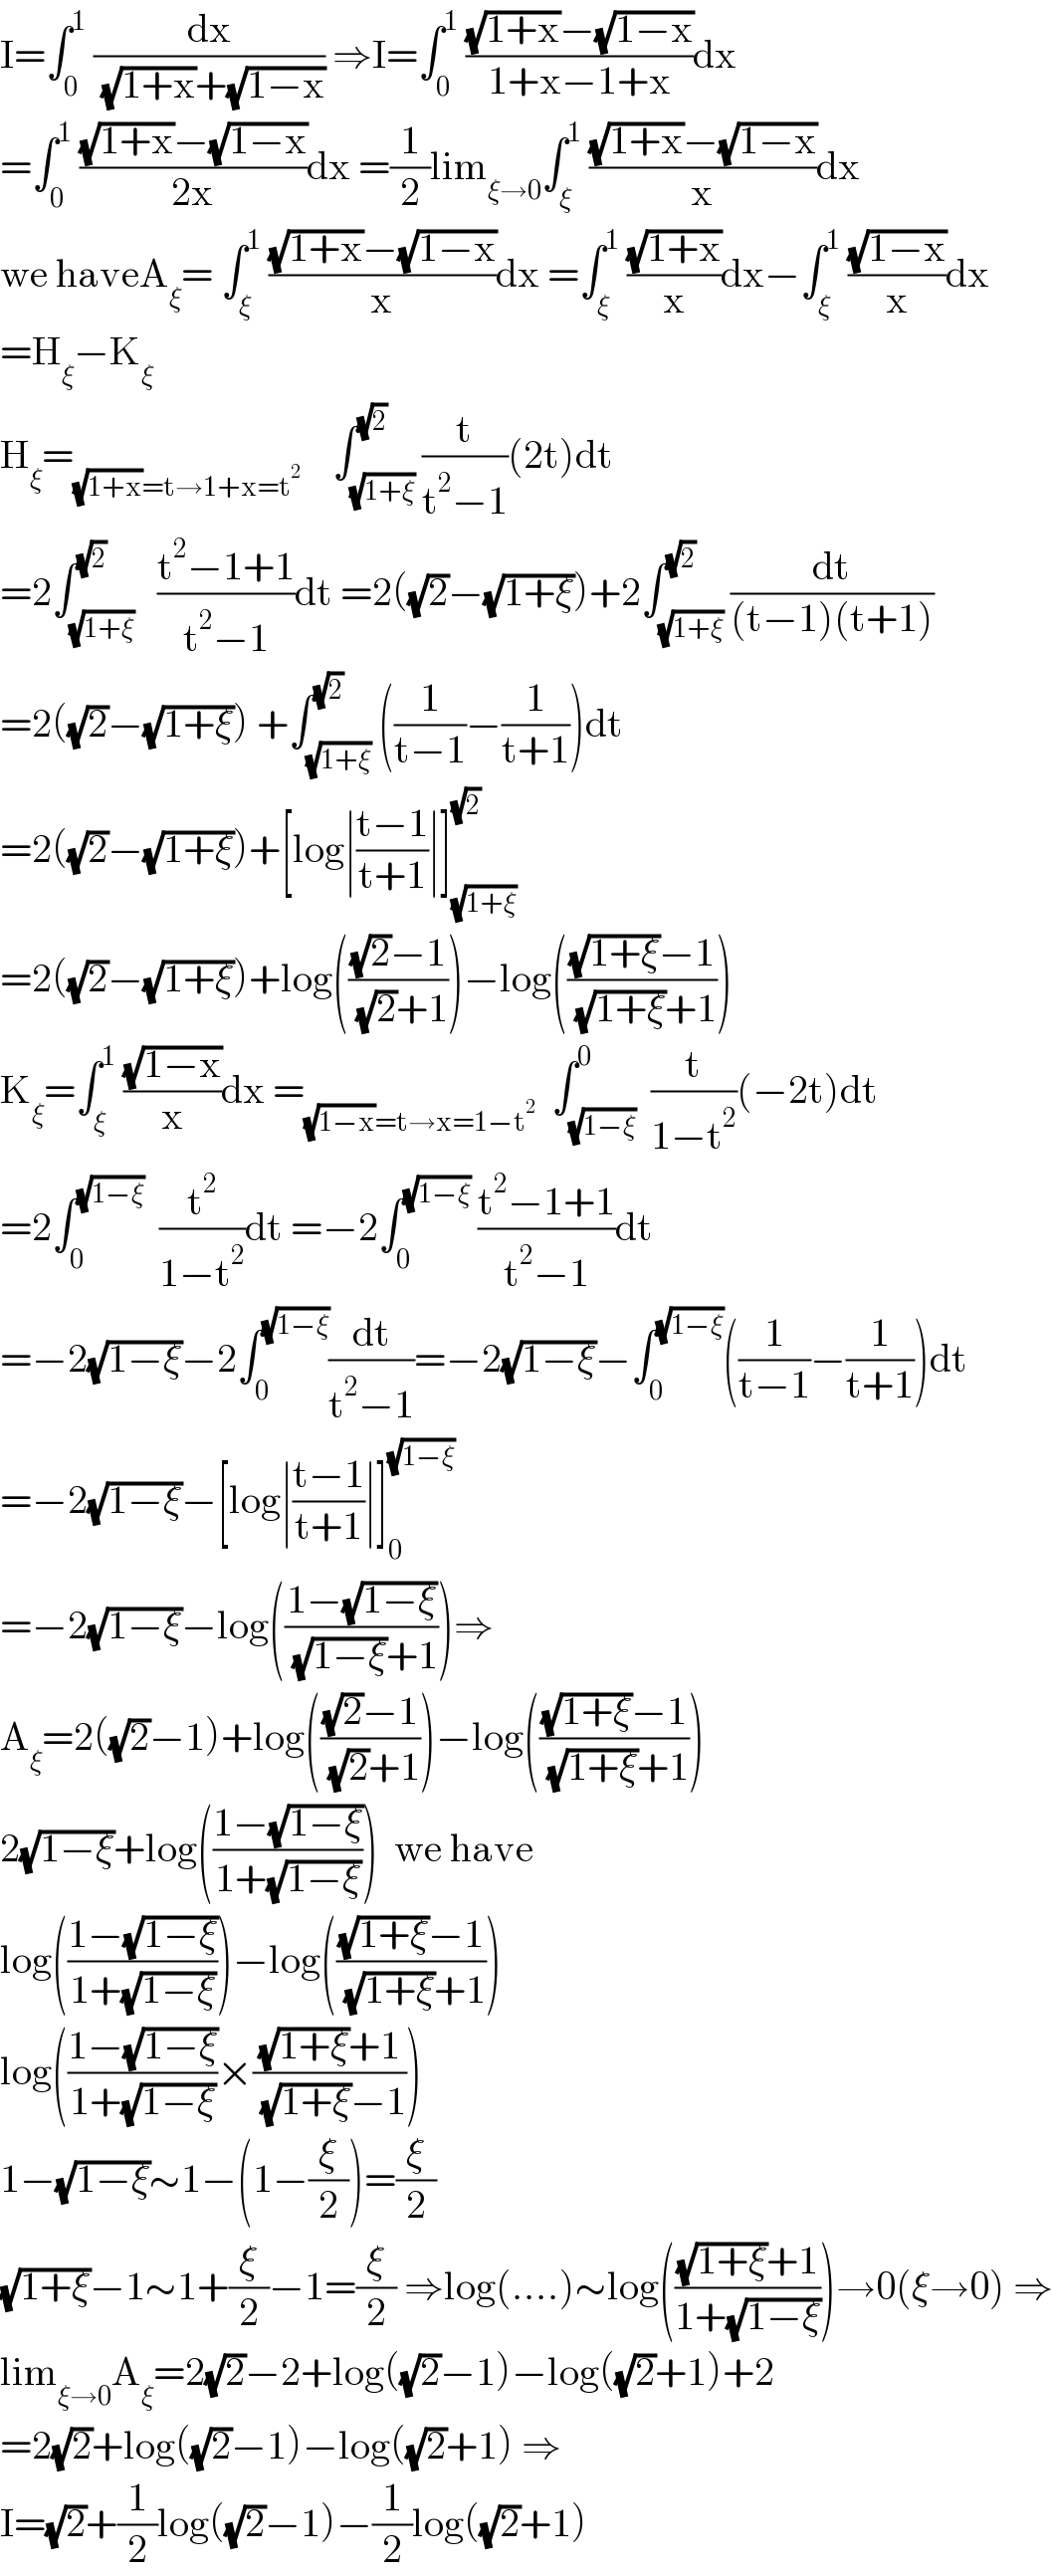 I=∫_0 ^1  (dx/( (√(1+x))+(√(1−x)))) ⇒I=∫_0 ^1  (((√(1+x))−(√(1−x)))/(1+x−1+x))dx  =∫_0 ^1  (((√(1+x))−(√(1−x)))/(2x))dx =(1/2)lim_(ξ→0) ∫_ξ ^1  (((√(1+x))−(√(1−x)))/x)dx  we haveA_ξ = ∫_ξ ^1  (((√(1+x))−(√(1−x)))/x)dx =∫_ξ ^1  ((√(1+x))/x)dx−∫_ξ ^1  ((√(1−x))/x)dx  =H_ξ −K_ξ   H_ξ =_((√(1+x))=t→1+x=t^2 )     ∫_(√(1+ξ)) ^(√2) (t/(t^2 −1))(2t)dt  =2∫_(√(1+ξ)) ^(√2)   ((t^2 −1+1)/(t^2 −1))dt =2((√2)−(√(1+ξ)))+2∫_(√(1+ξ)) ^(√2) (dt/((t−1)(t+1)))  =2((√2)−(√(1+ξ))) +∫_(√(1+ξ)) ^(√2) ((1/(t−1))−(1/(t+1)))dt  =2((√2)−(√(1+ξ)))+[log∣((t−1)/(t+1))∣]_(√(1+ξ)) ^(√2)   =2((√2)−(√(1+ξ)))+log((((√2)−1)/( (√2)+1)))−log((((√(1+ξ))−1)/( (√(1+ξ))+1)))  K_ξ =∫_ξ ^1  ((√(1−x))/x)dx =_((√(1−x))=t→x=1−t^2 )   ∫_(√(1−ξ)) ^0  (t/(1−t^2 ))(−2t)dt  =2∫_0 ^(√(1−ξ))   (t^2 /(1−t^2 ))dt =−2∫_0 ^(√(1−ξ))  ((t^2 −1+1)/(t^2 −1))dt  =−2(√(1−ξ))−2∫_0 ^(√(1−ξ)) (dt/(t^2 −1))=−2(√(1−ξ))−∫_0 ^(√(1−ξ)) ((1/(t−1))−(1/(t+1)))dt  =−2(√(1−ξ))−[log∣((t−1)/(t+1))∣]_0 ^(√(1−ξ))   =−2(√(1−ξ))−log(((1−(√(1−ξ)))/( (√(1−ξ))+1)))⇒  A_ξ =2((√2)−1)+log((((√2)−1)/( (√2)+1)))−log((((√(1+ξ))−1)/( (√(1+ξ))+1)))  2(√(1−ξ))+log(((1−(√(1−ξ)))/(1+(√(1−ξ)))))  we have  log(((1−(√(1−ξ)))/(1+(√(1−ξ)))))−log((((√(1+ξ))−1)/( (√(1+ξ))+1)))  log(((1−(√(1−ξ)))/(1+(√(1−ξ))))×(((√(1+ξ))+1)/( (√(1+ξ))−1)))  1−(√(1−ξ))∼1−(1−(ξ/2))=(ξ/2)  (√(1+ξ))−1∼1+(ξ/2)−1=(ξ/2) ⇒log(....)∼log((((√(1+ξ))+1)/(1+(√(1−ξ)))))→0(ξ→0) ⇒  lim_(ξ→0) A_ξ =2(√2)−2+log((√2)−1)−log((√2)+1)+2  =2(√2)+log((√2)−1)−log((√2)+1) ⇒  I=(√2)+(1/2)log((√2)−1)−(1/2)log((√2)+1)  